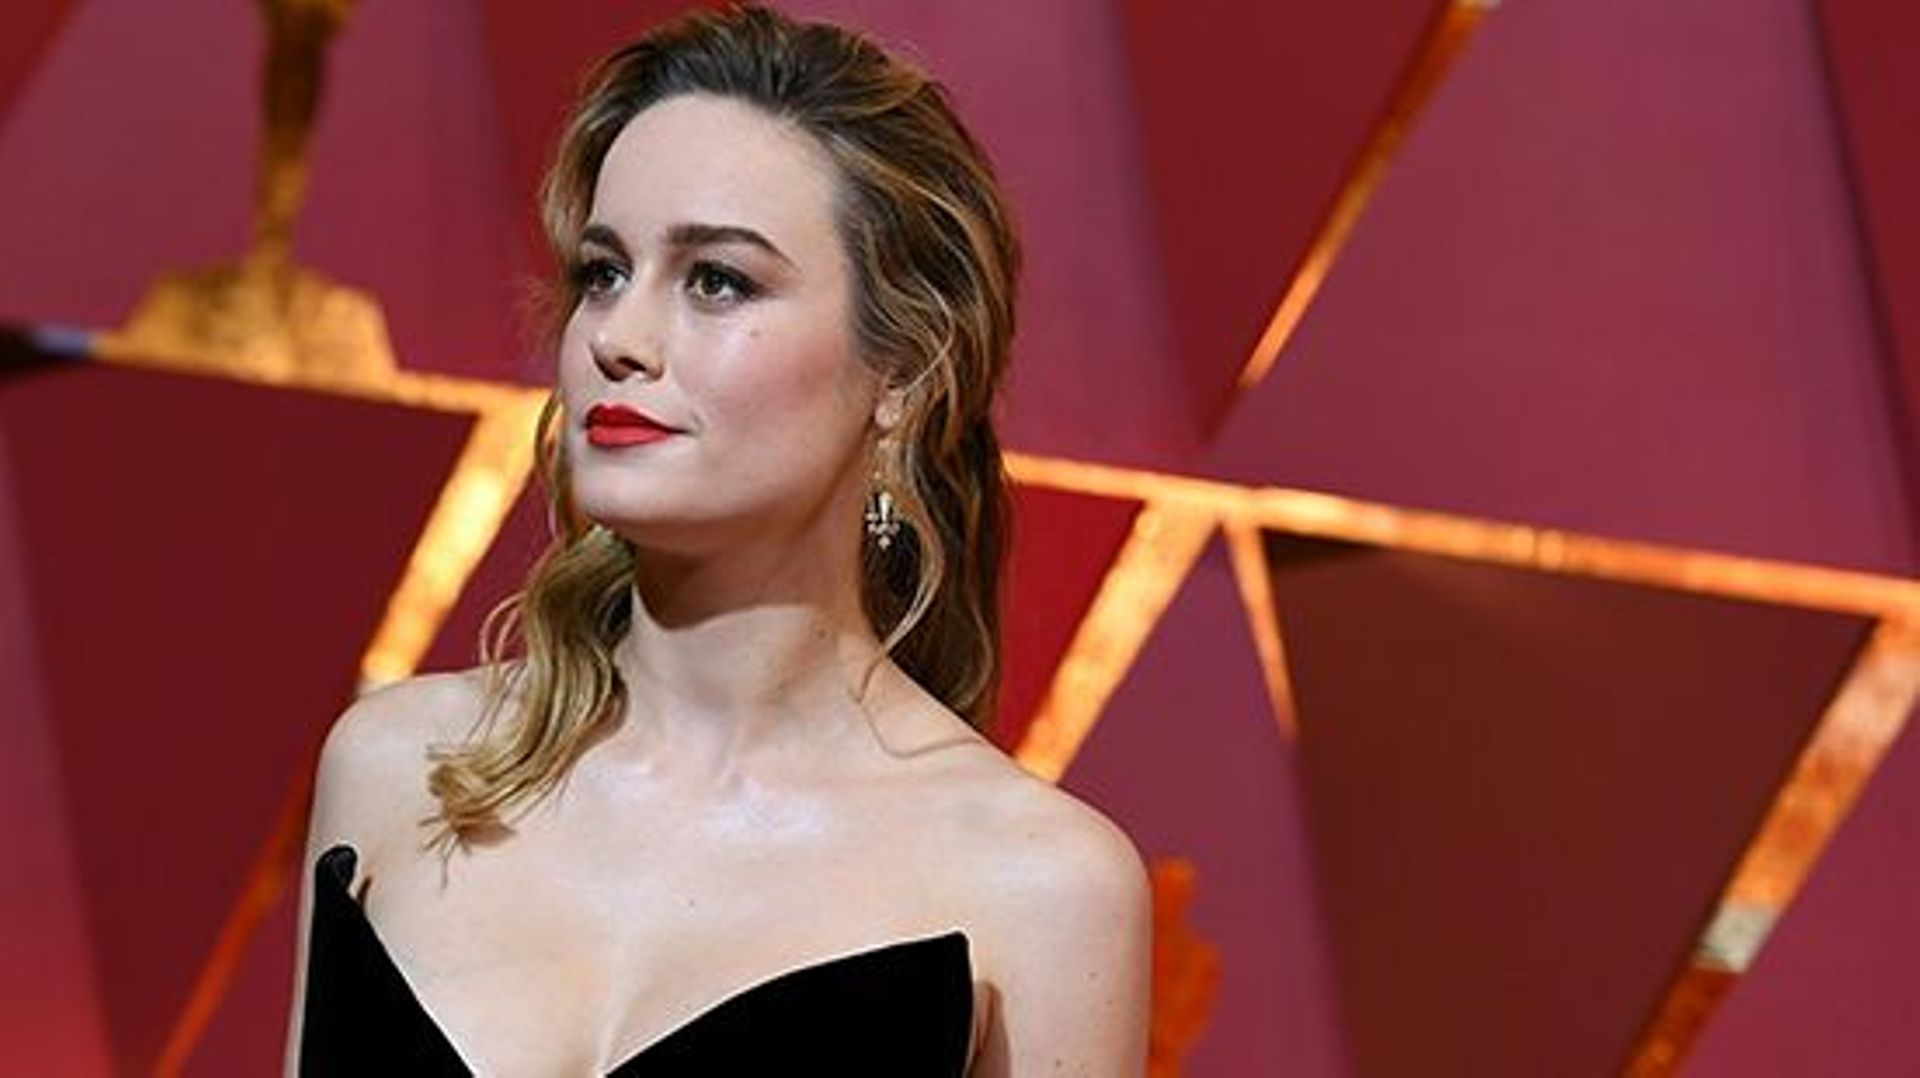 Brie Larson est l'héroïne de "Captain Marvel", attendu pour mars 2019 au cinéma.